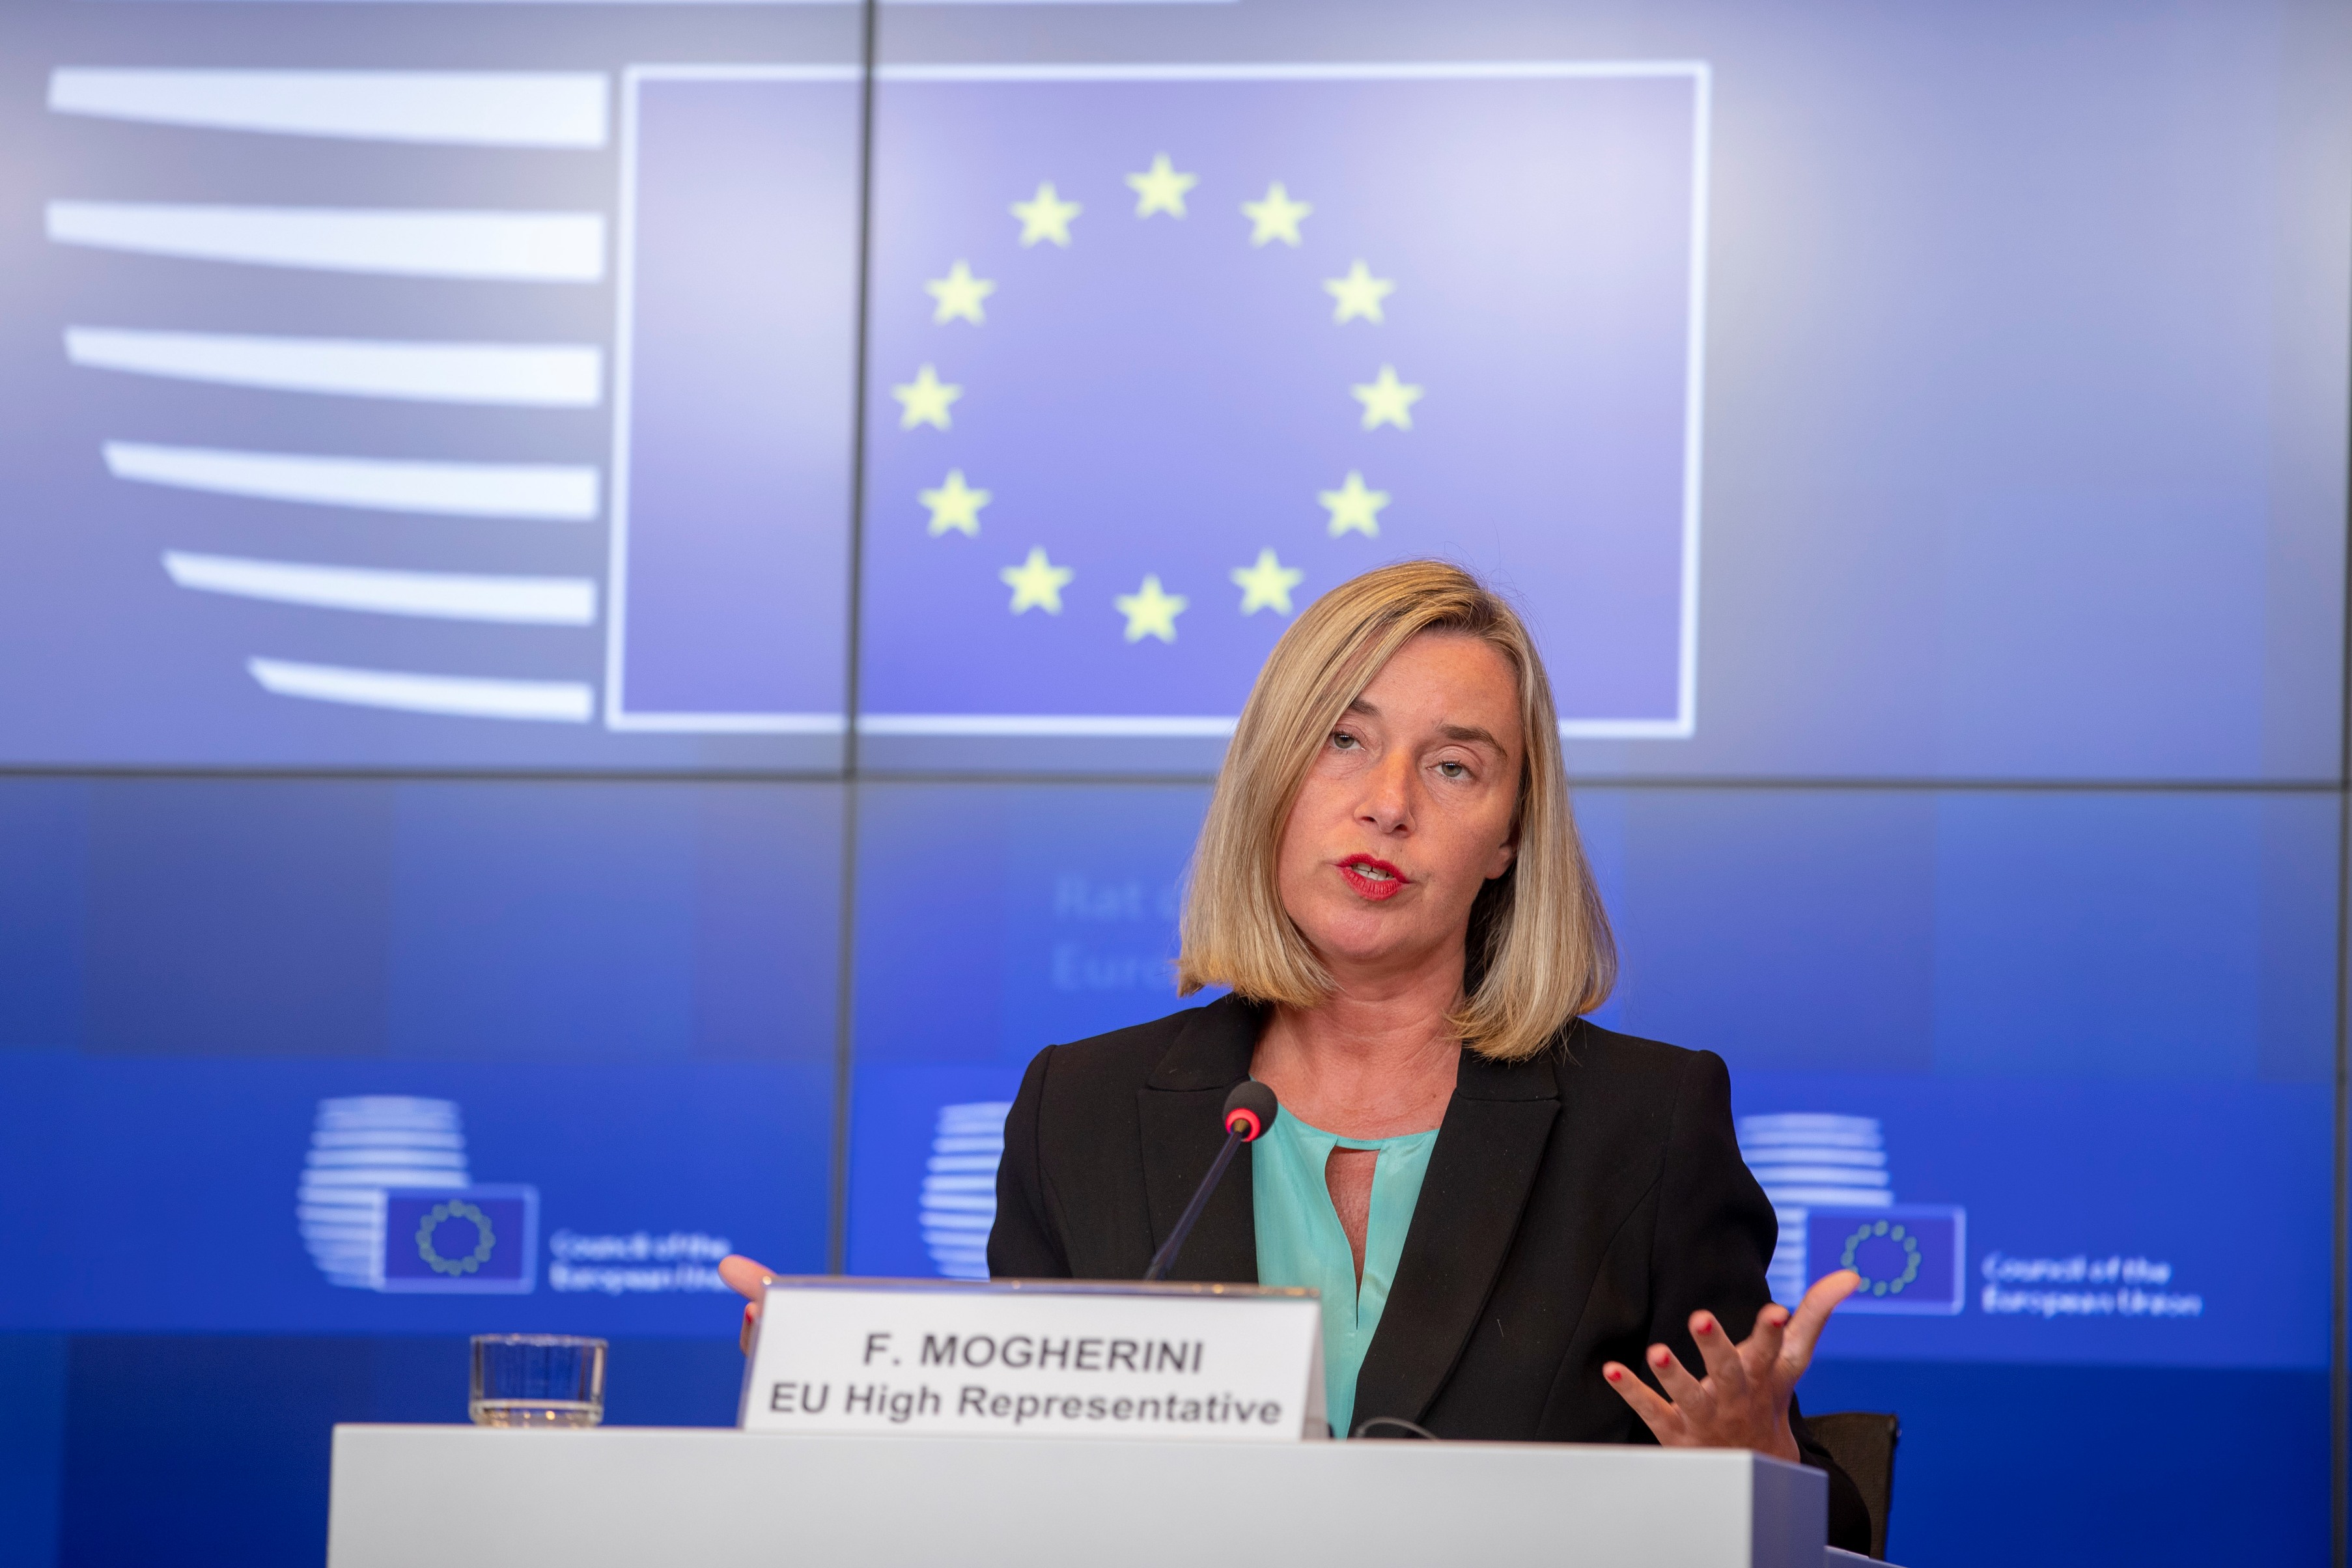 European Union High Commissioner Federica Mogherini